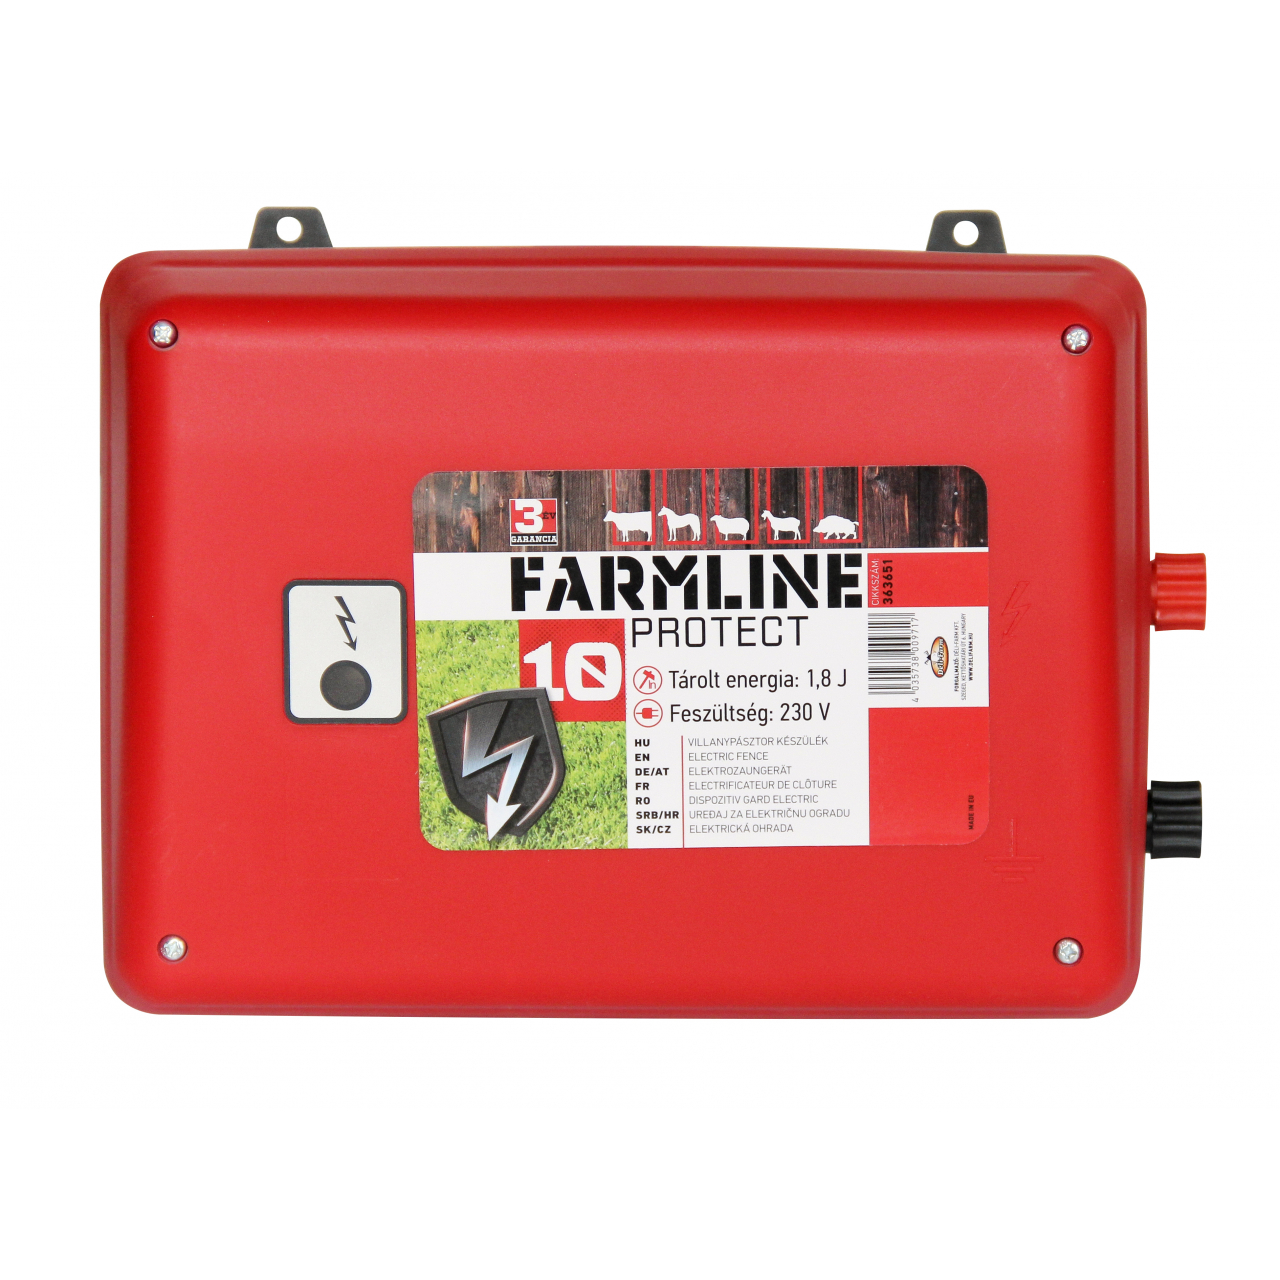 FarmLine Protect 10, 230 V, villanypásztor készülék(363651)